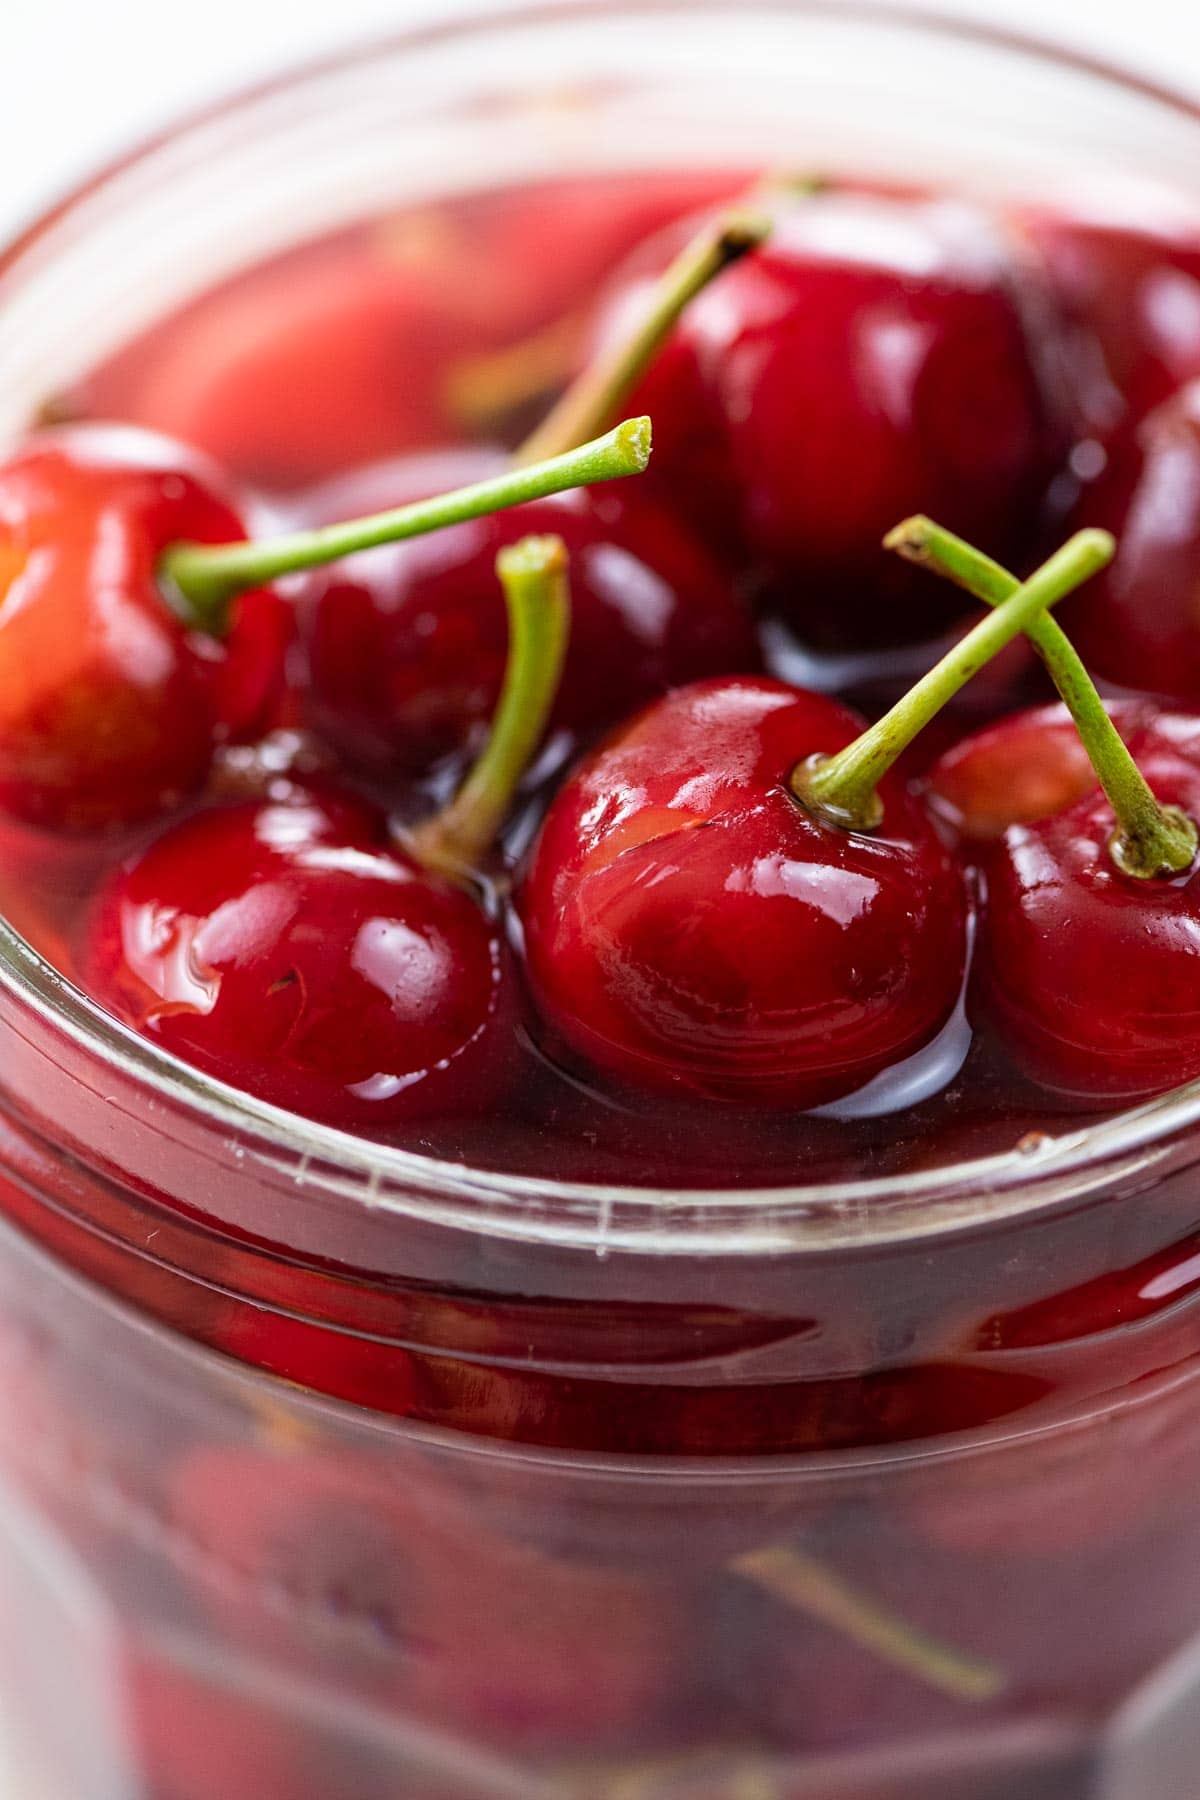 homemade maraschino cherries in a glass jar